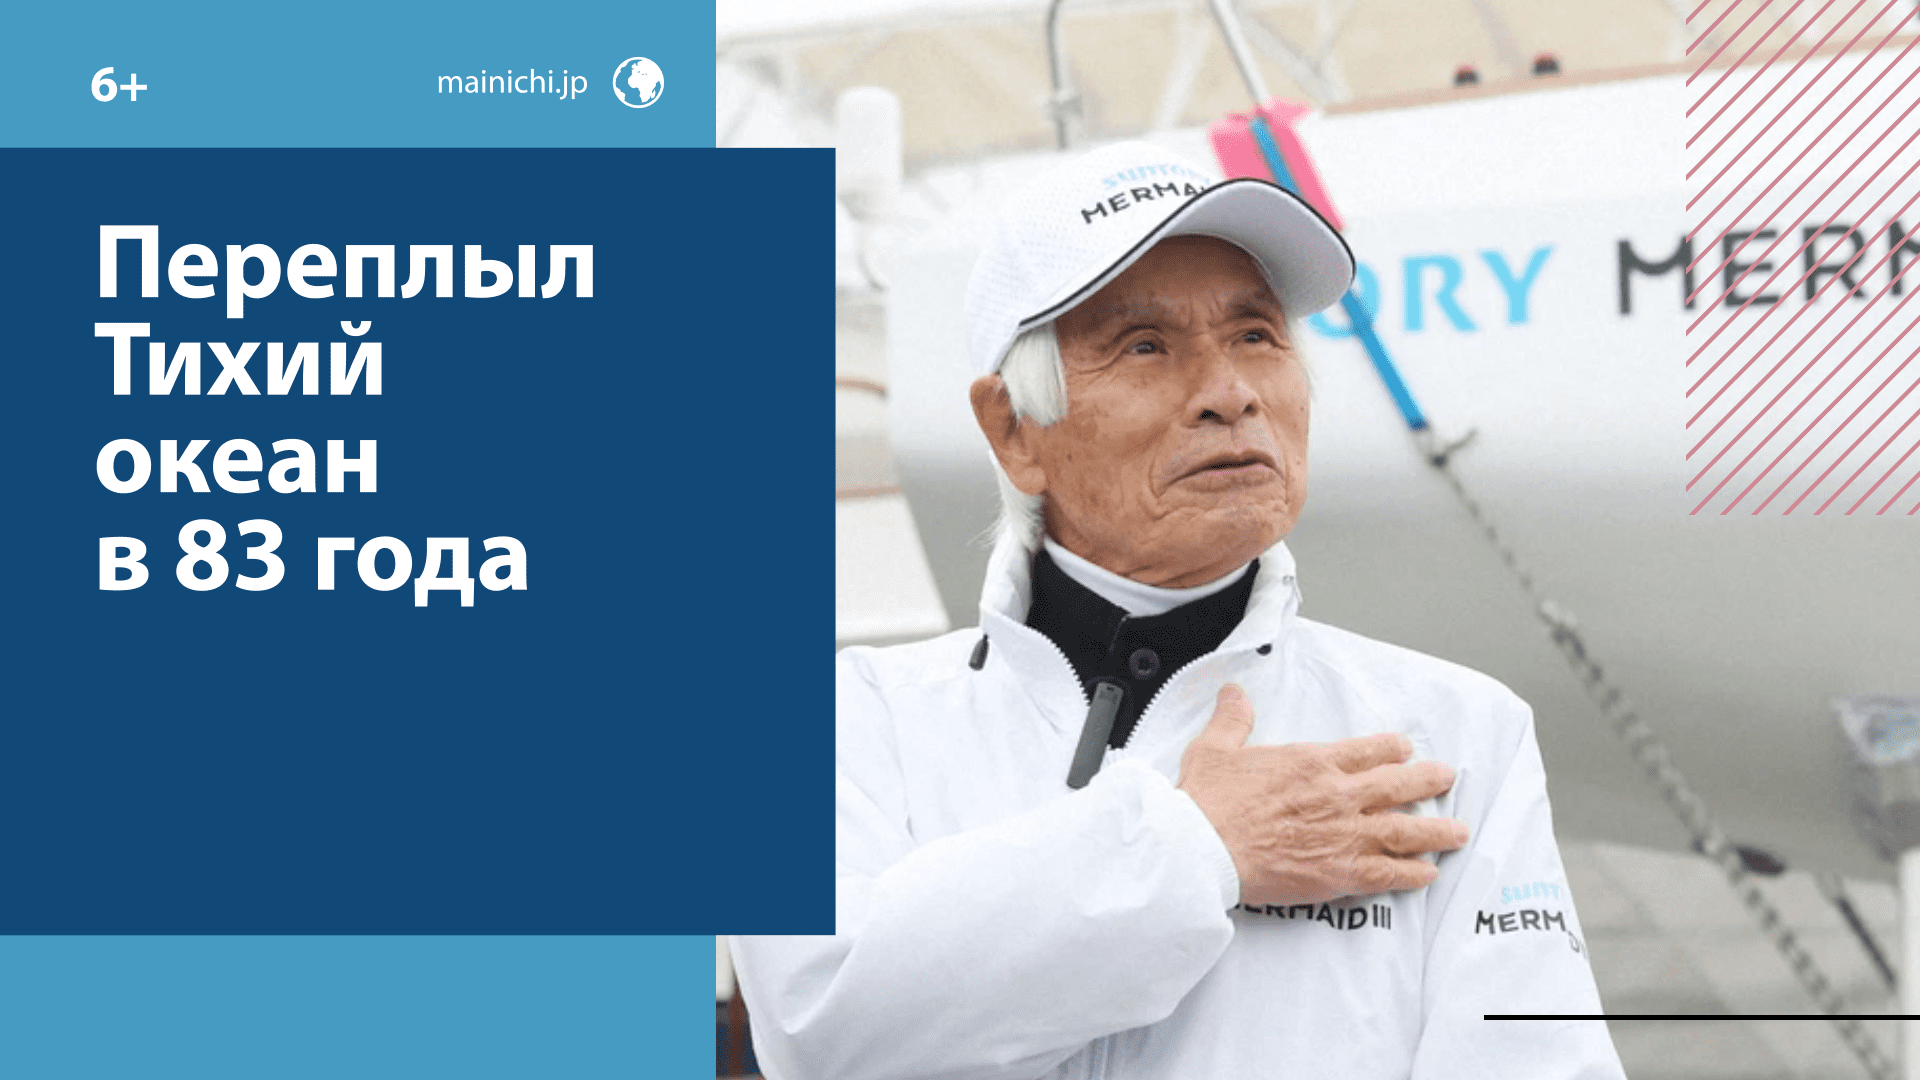 83-летний японец стал самым старым человеком, переплывшим в одиночку Тихий океан. - Москва FM